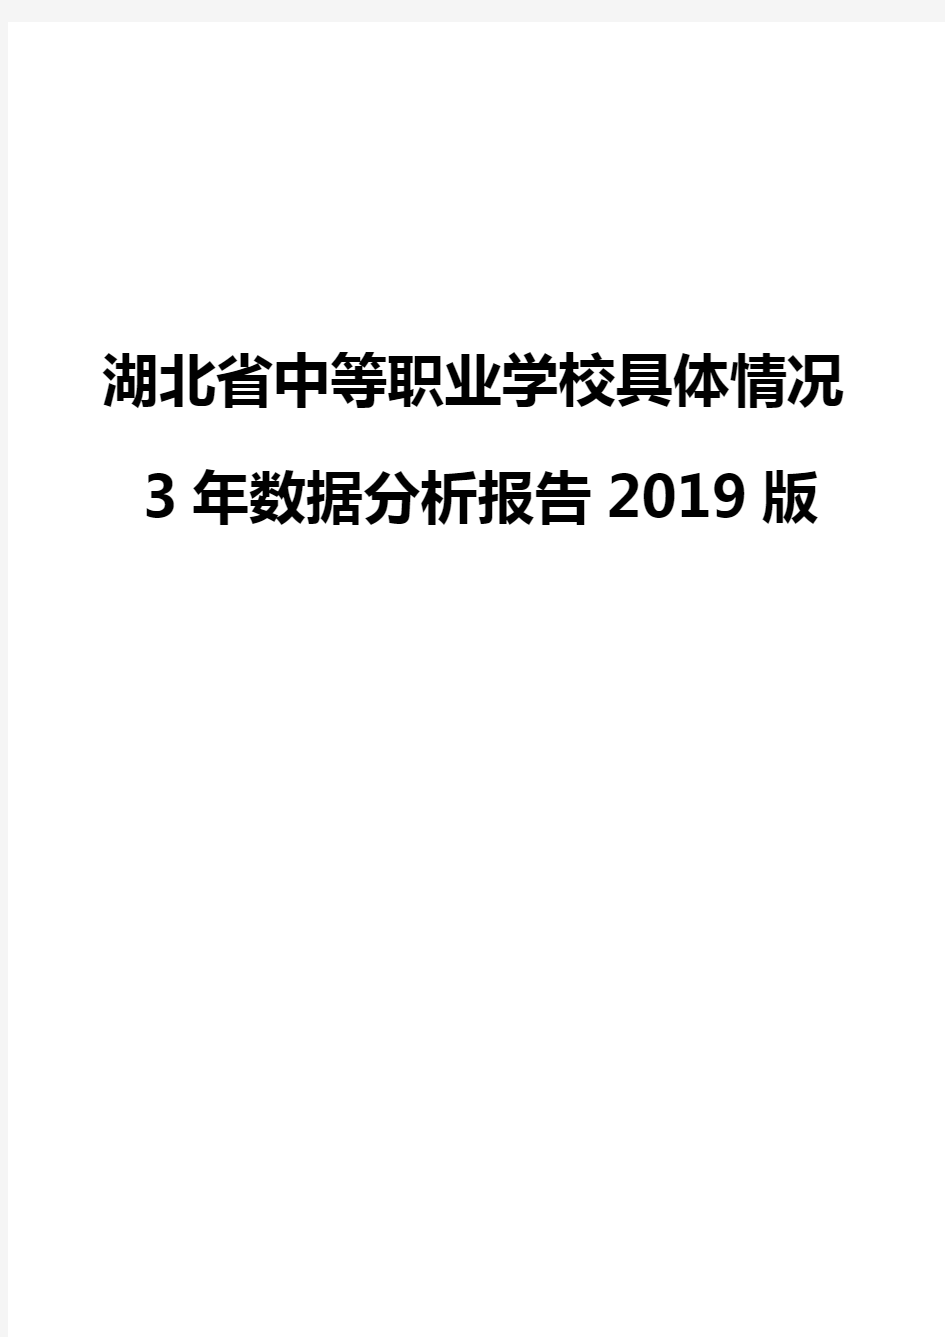 湖北省中等职业学校具体情况3年数据分析报告2019版